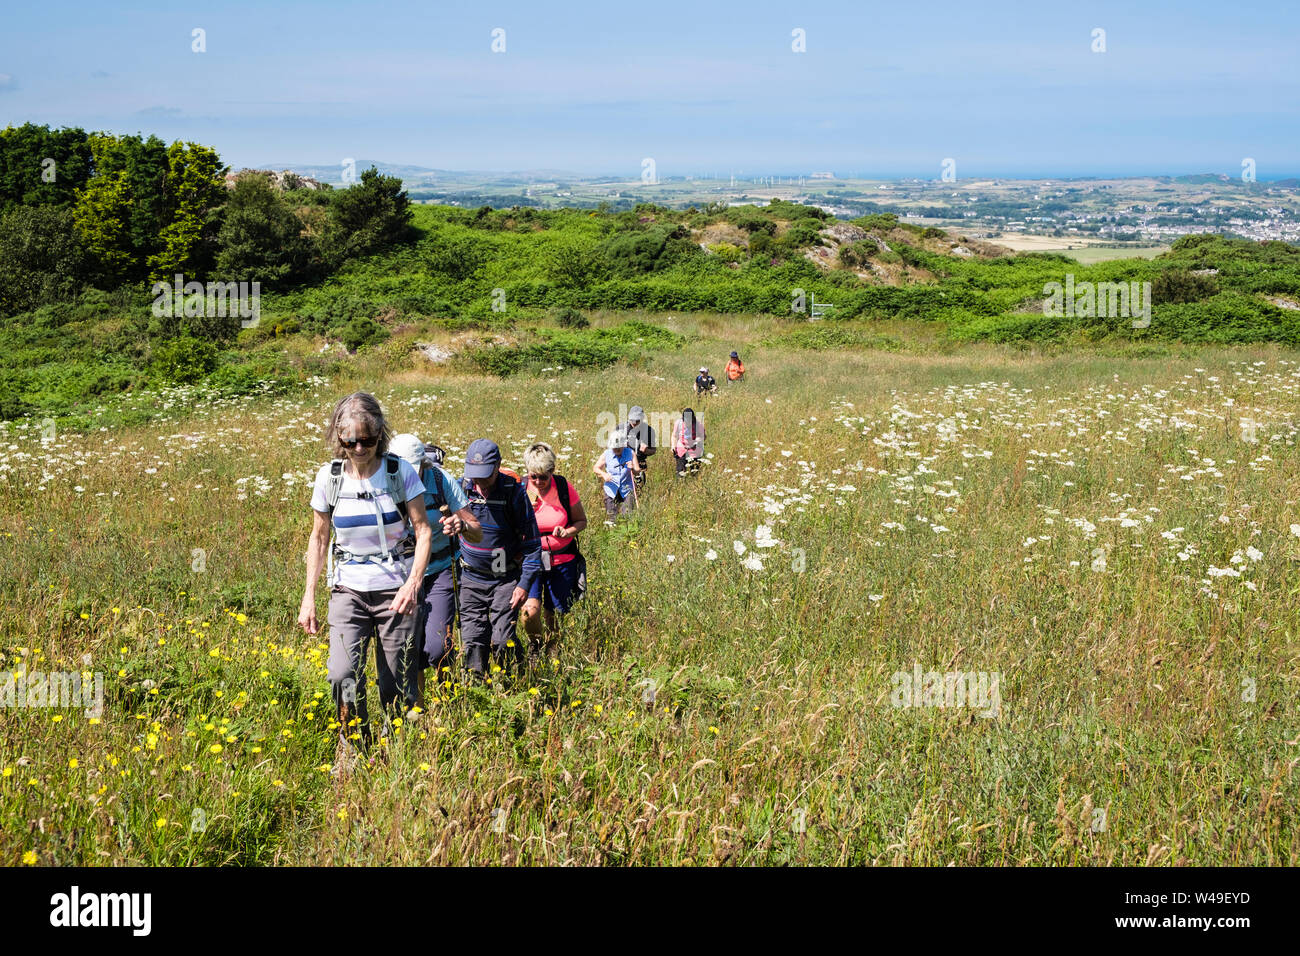 Les promeneurs marchant sur un sentier à travers une prairie de fleurs sauvages dans la campagne en été. Llaneilian, Isle of Anglesey, au nord du Pays de Galles, Royaume-Uni, Angleterre Banque D'Images